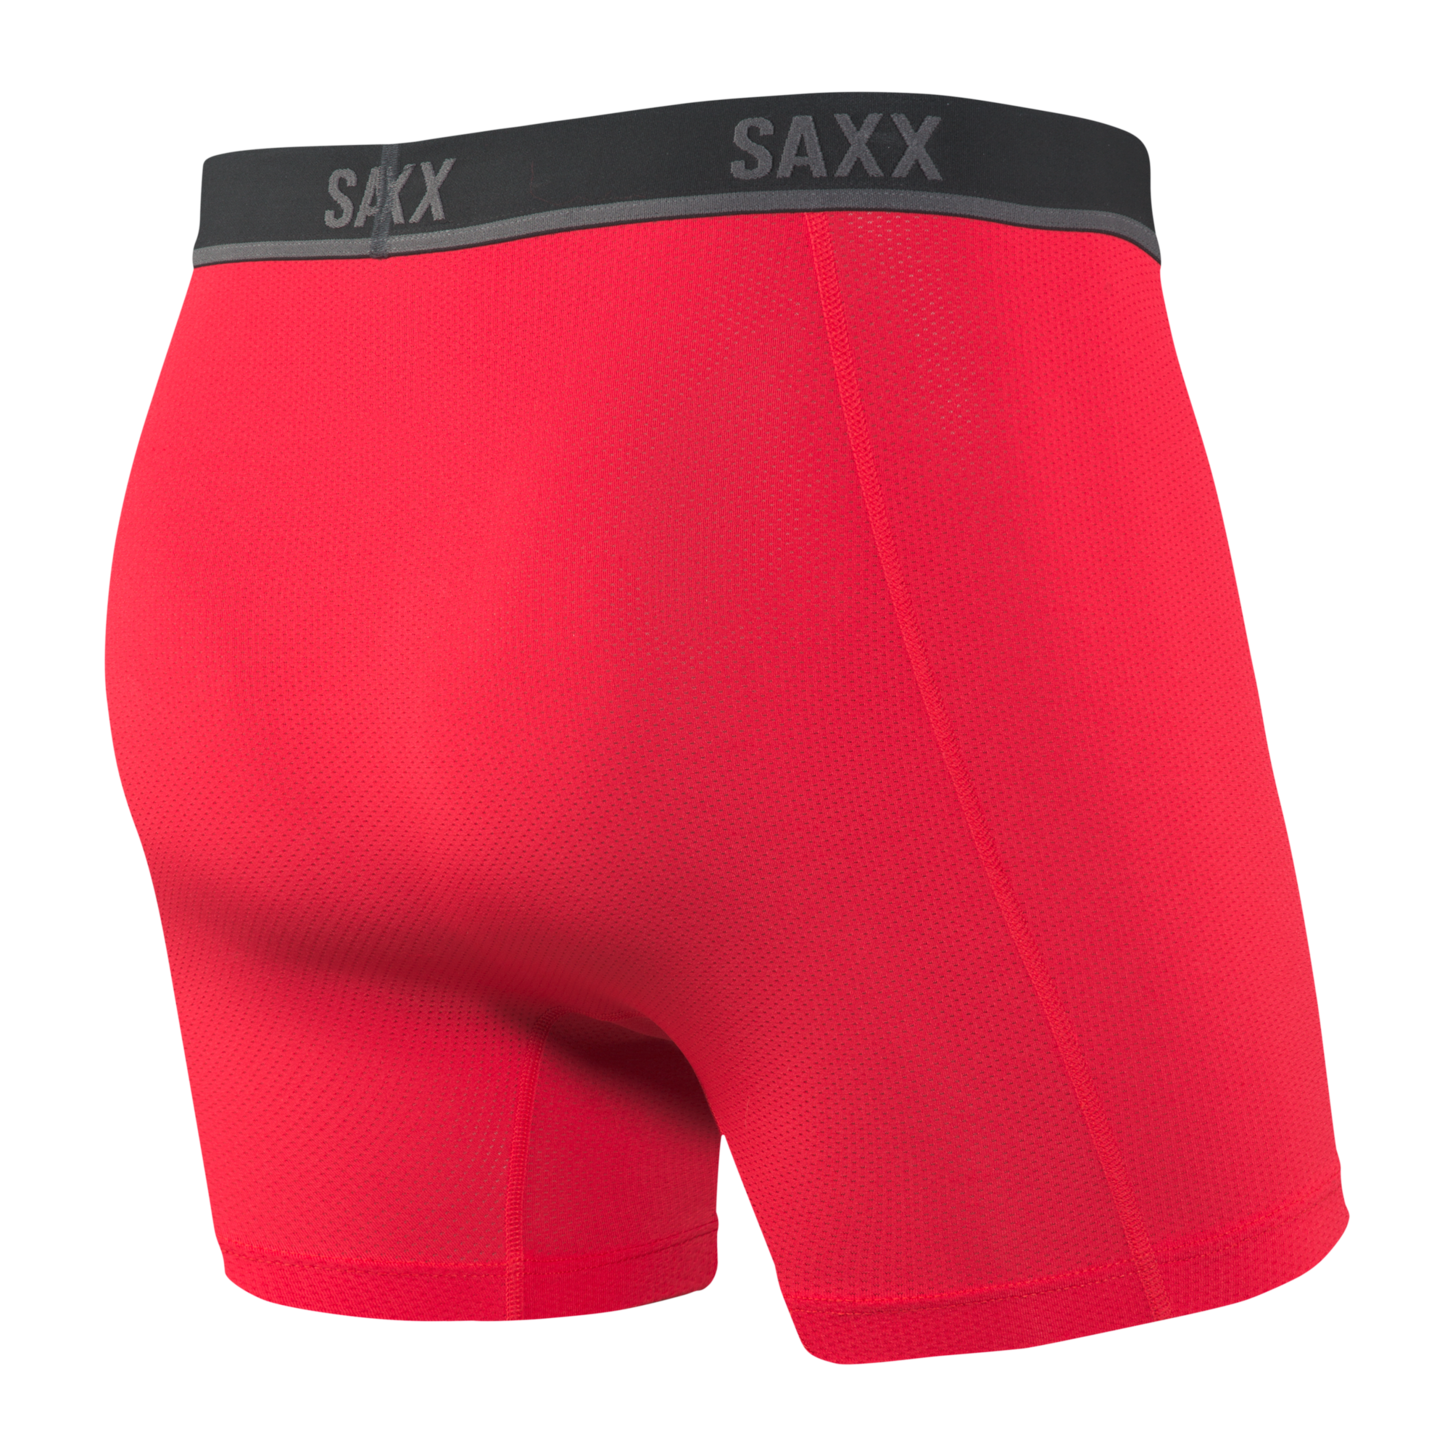 SAXX Kinetic Hd Boxer Brief - Men's